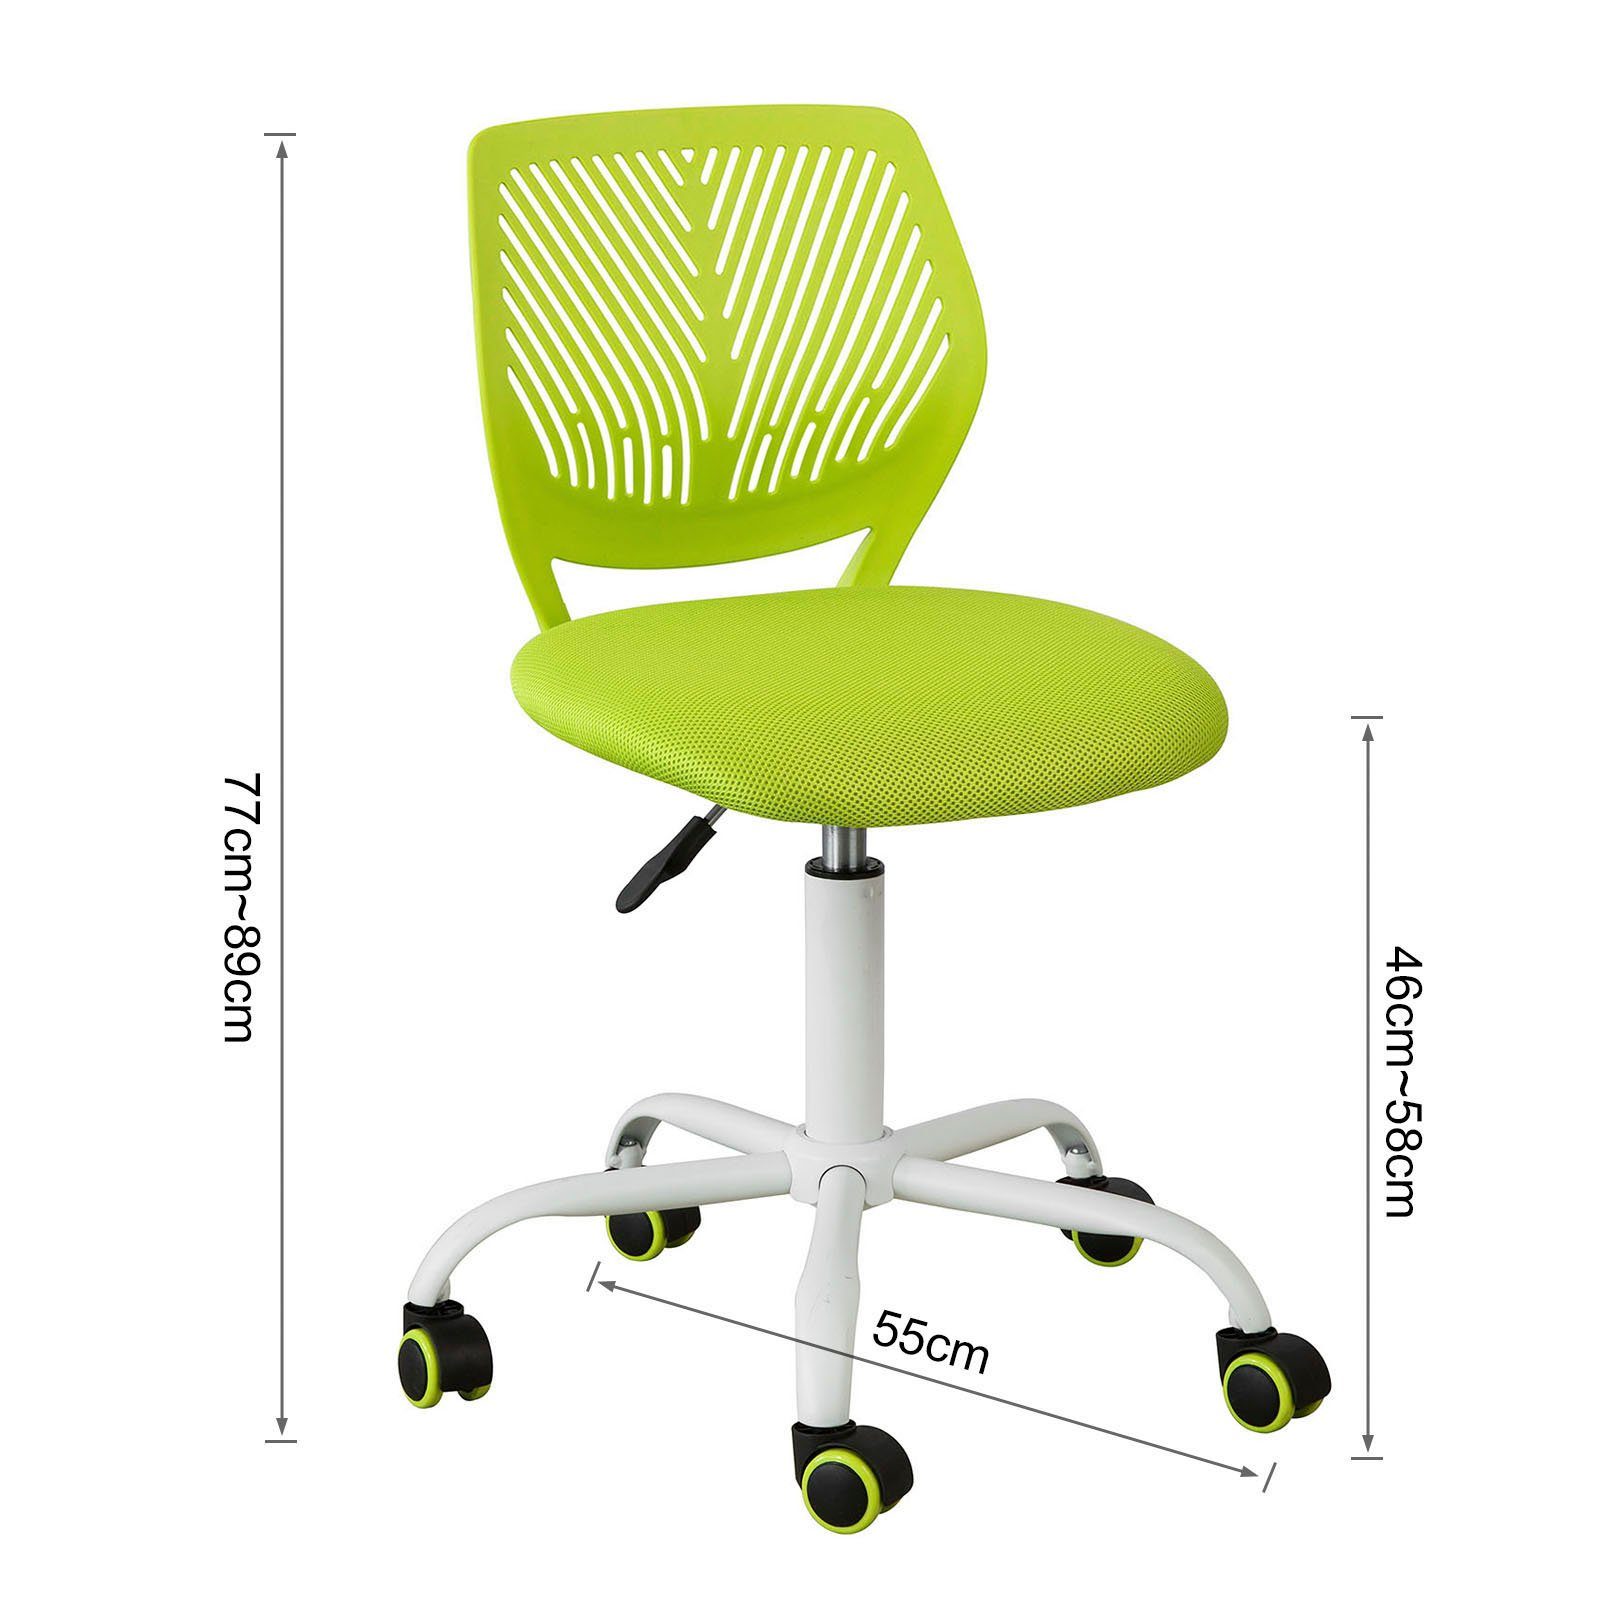 Drehstuhl Schreibtischstuhl Bürostuhl mit SoBuy höhenverstellbar Jugenddrehstuhl grün Rücklehne FST64,